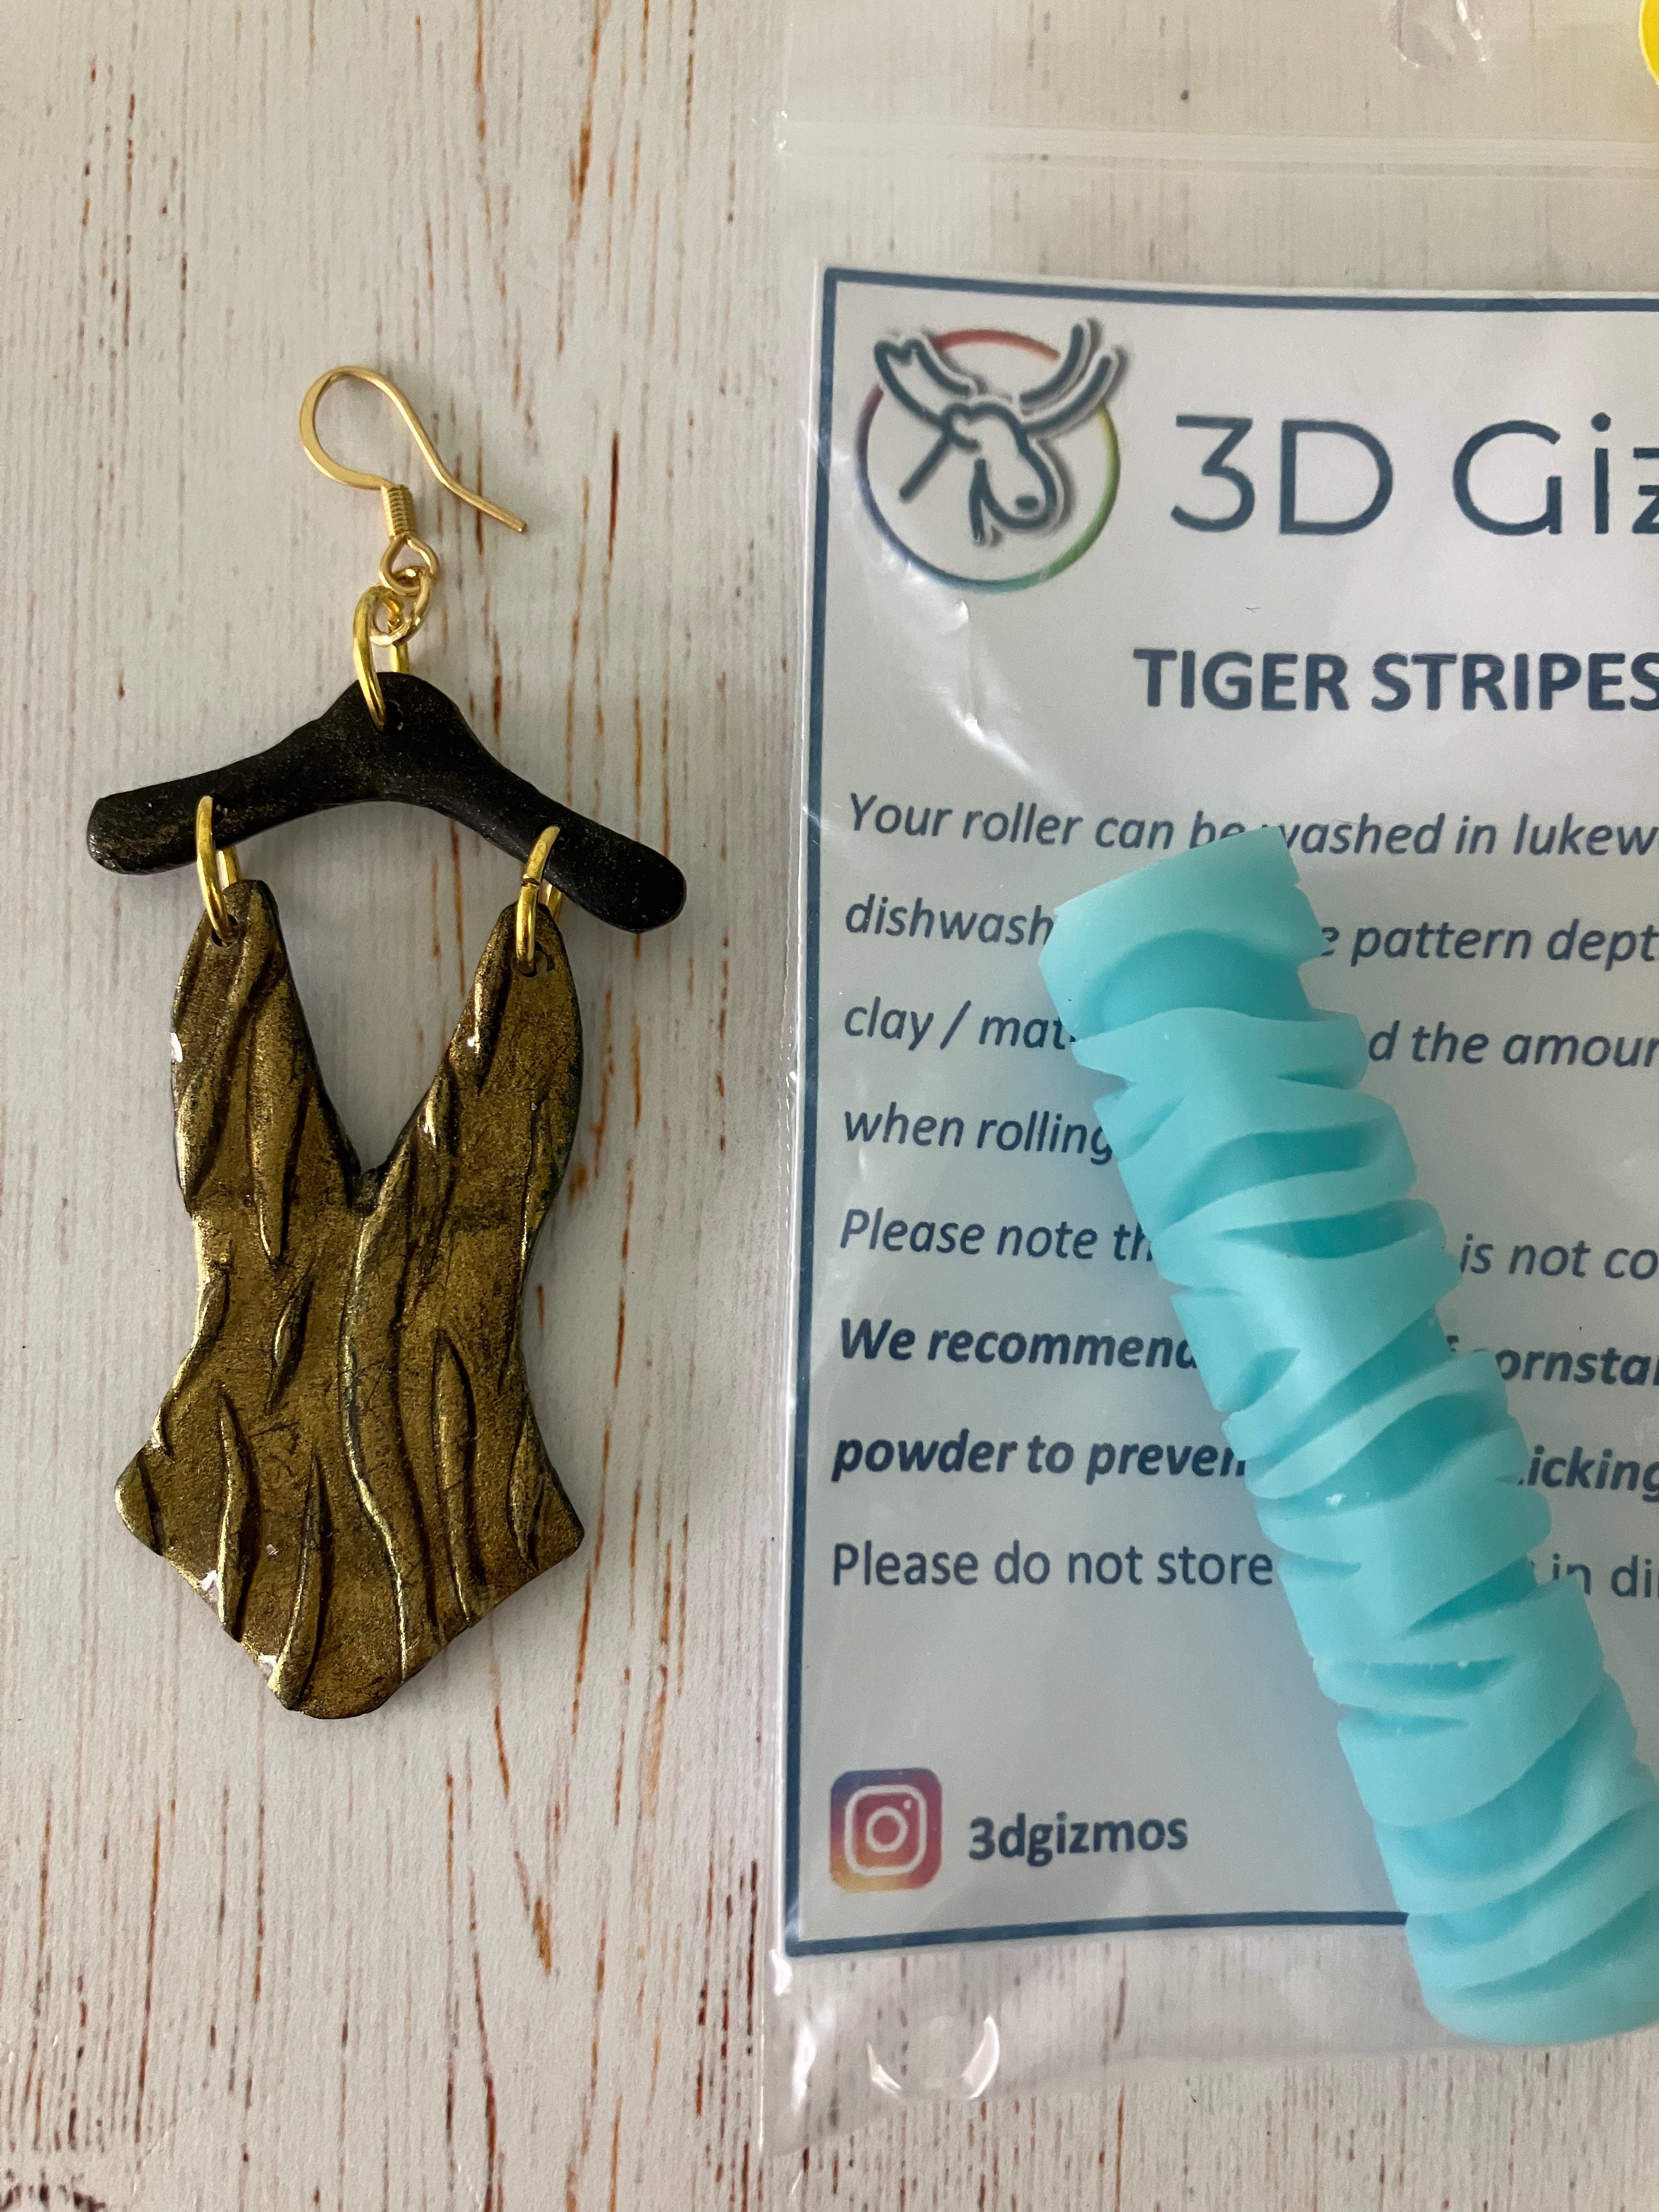 3D Gizmo's -  Tiger Stripes Roller